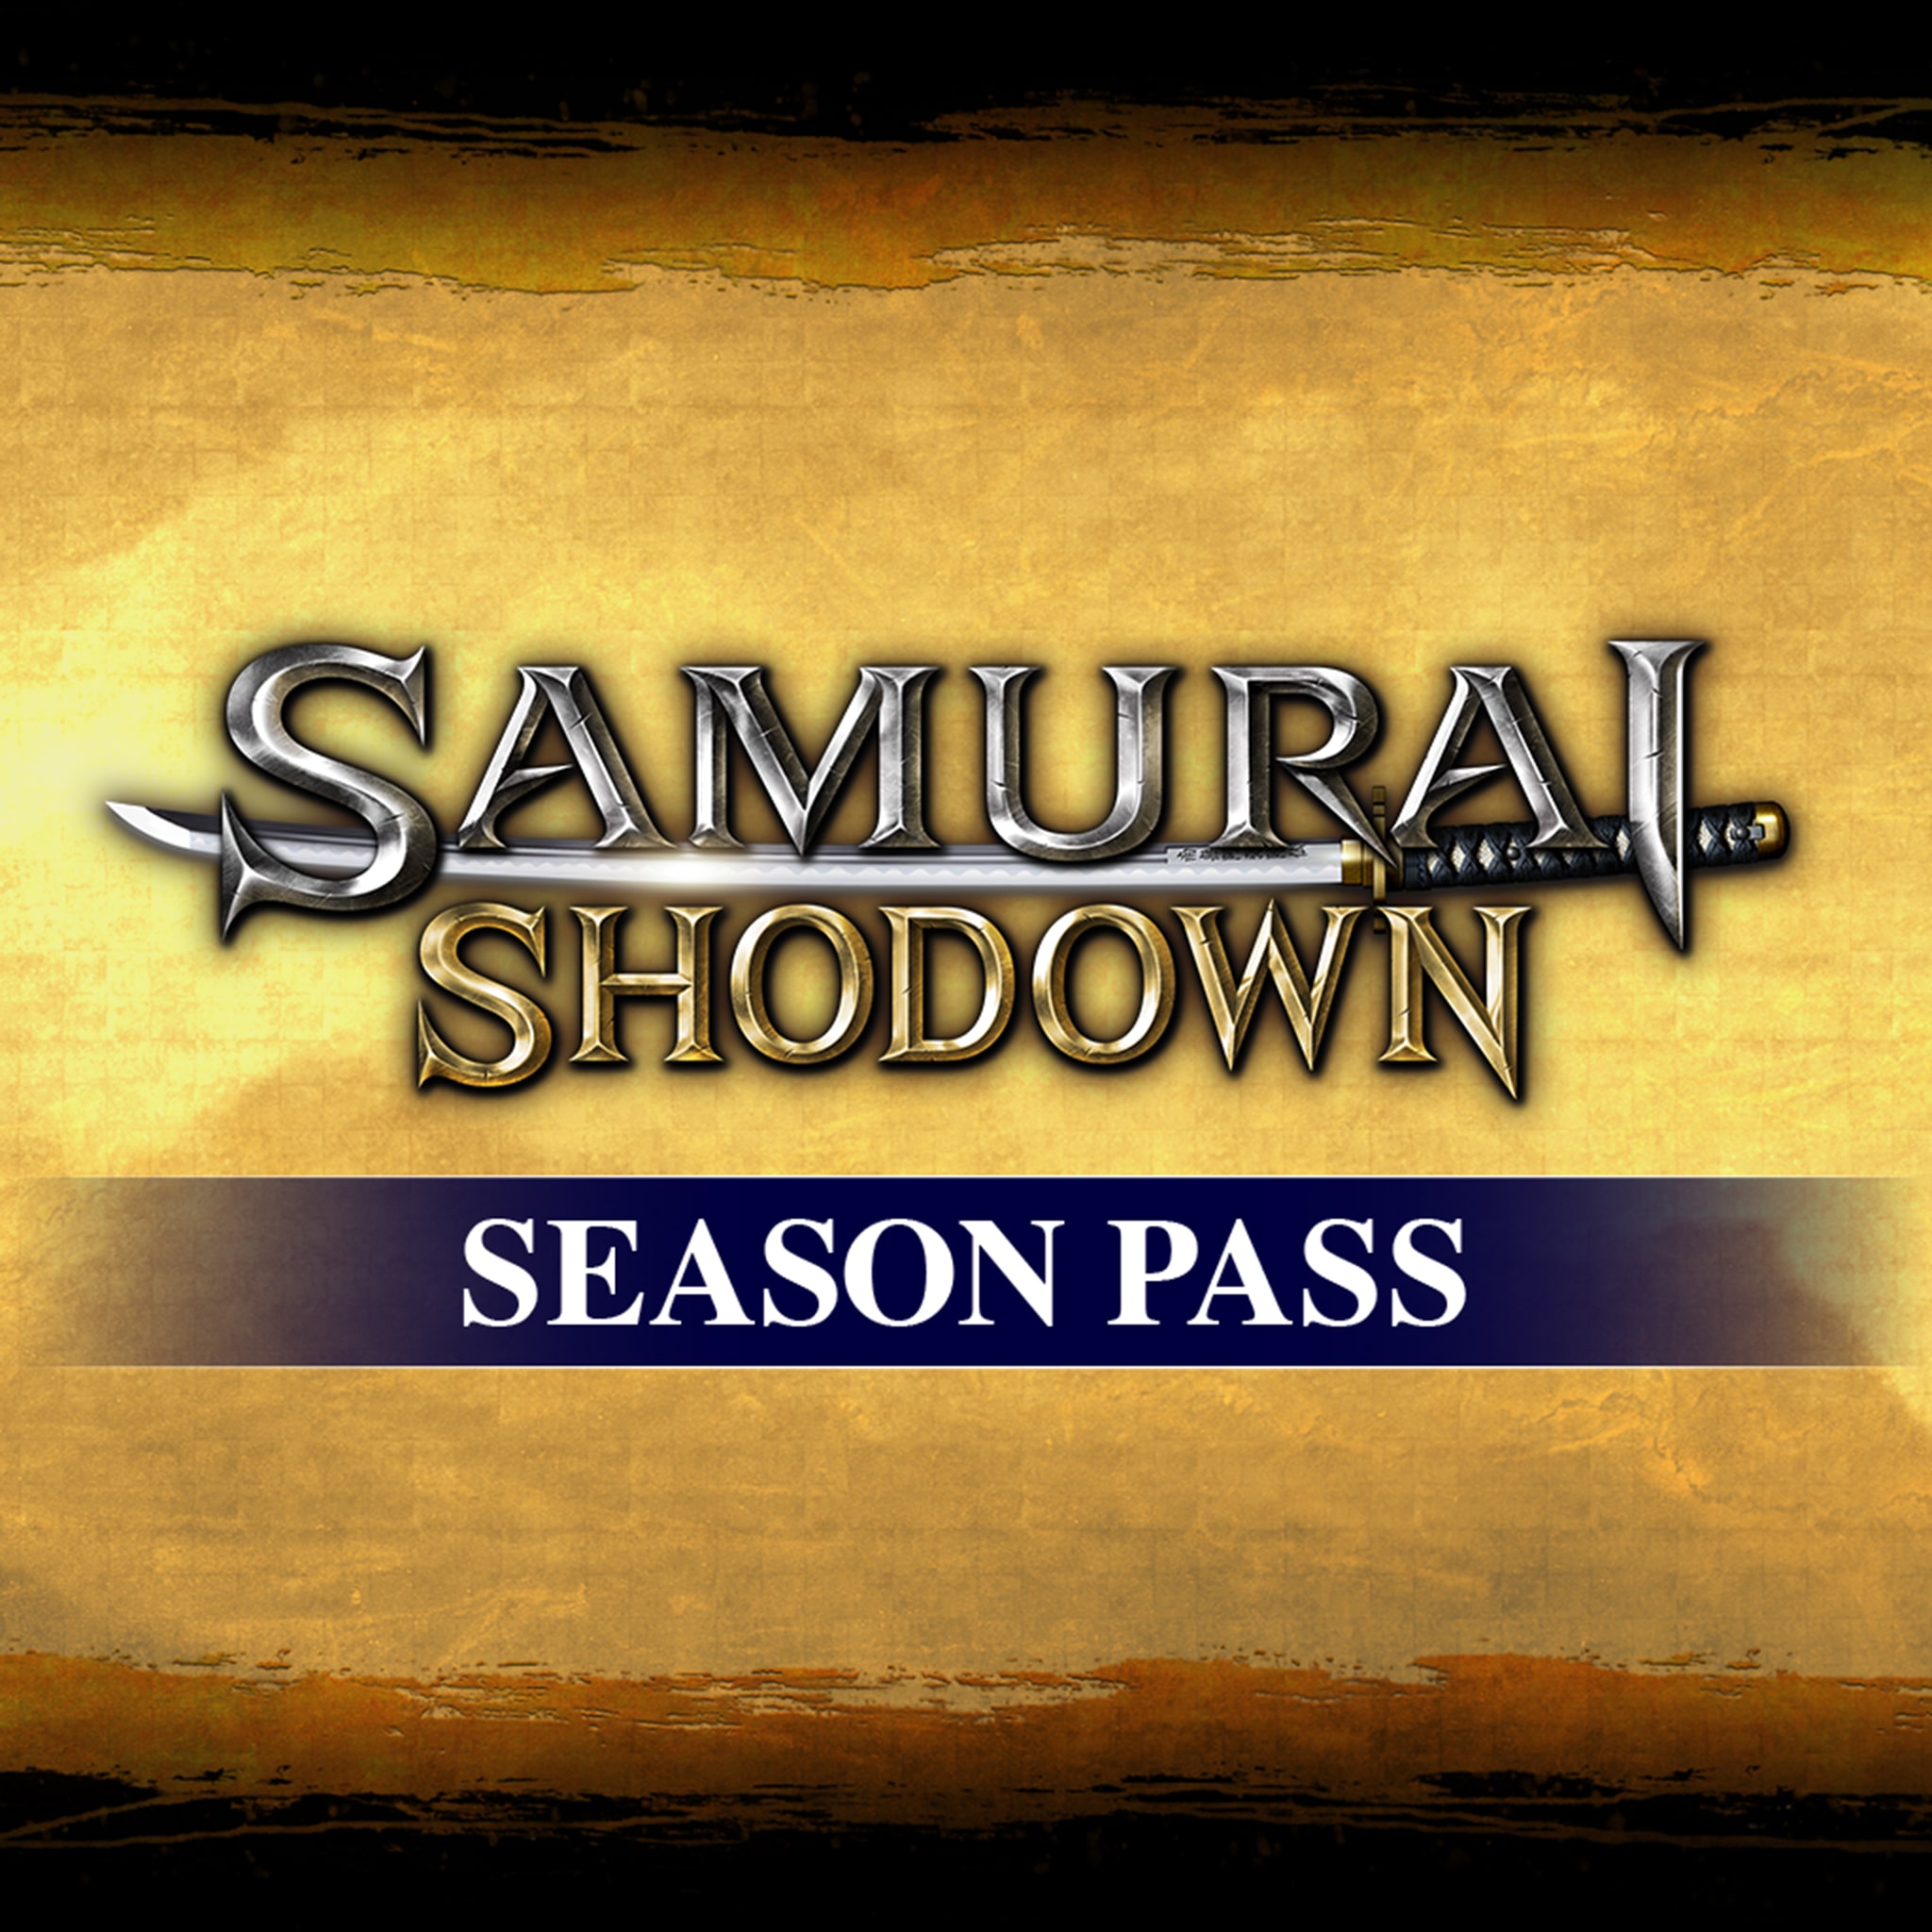 SAMURAI SHODOWN SEASON PASS